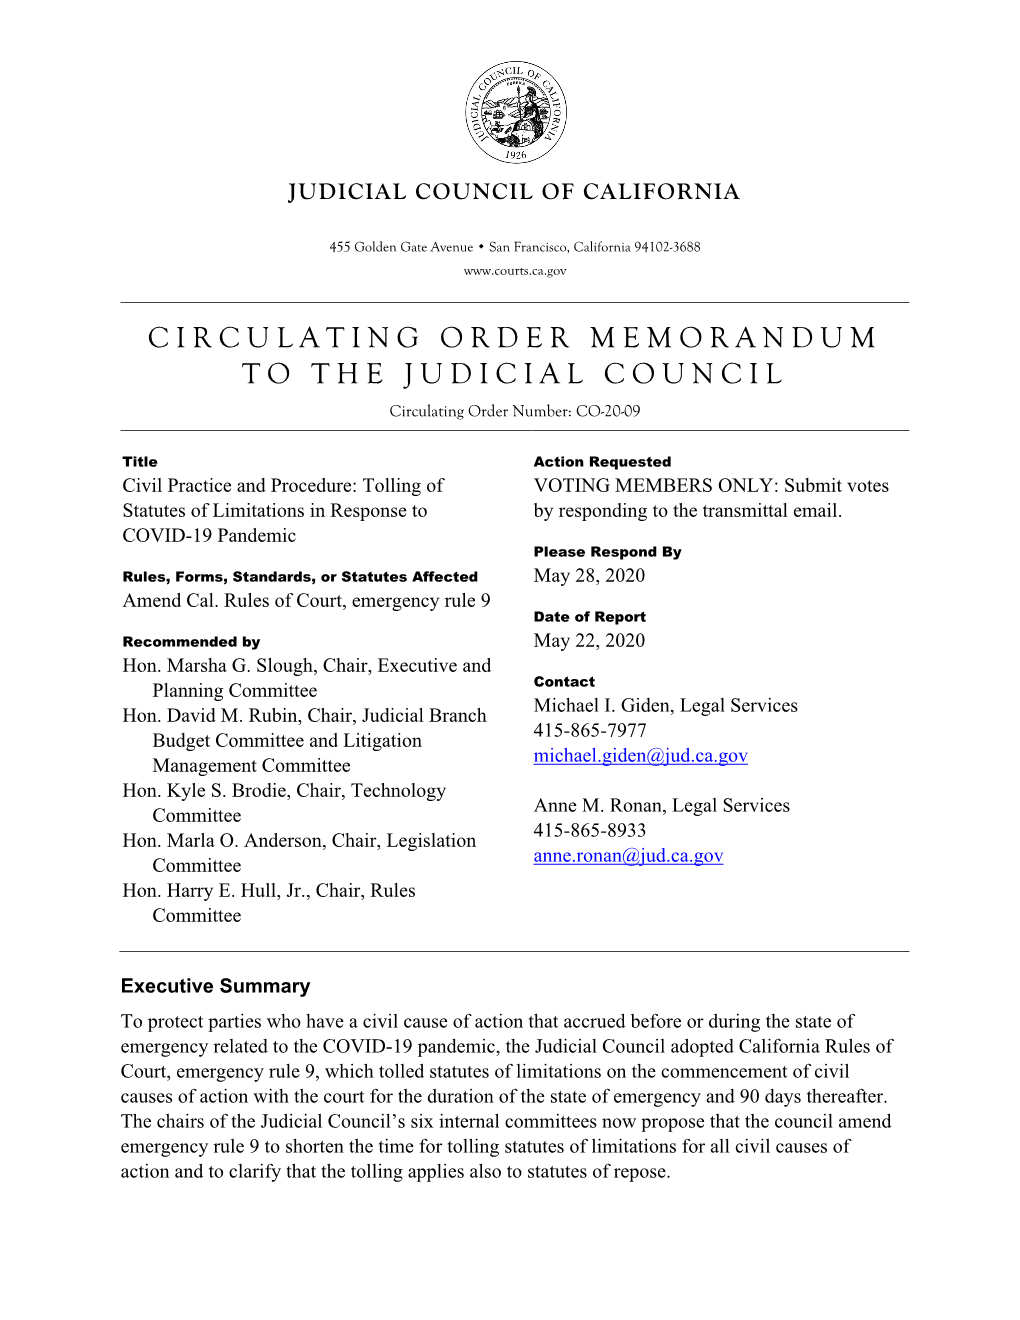 CIRCULATING ORDER MEMORANDUM to the JUDICIAL COUNCIL Circulating Order Number: CO-20-09